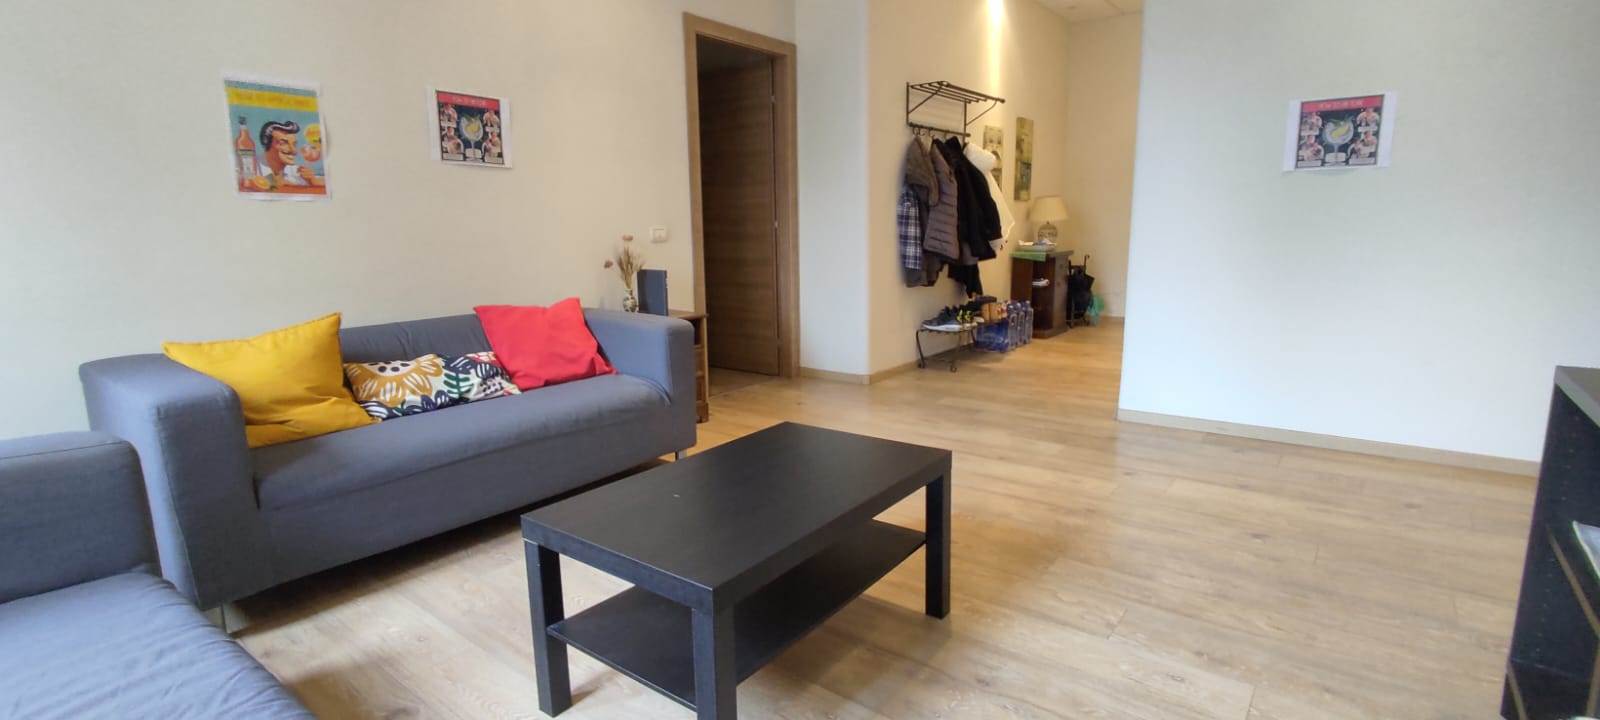 Appartamento ristrutturato in zona Borgo a Catania